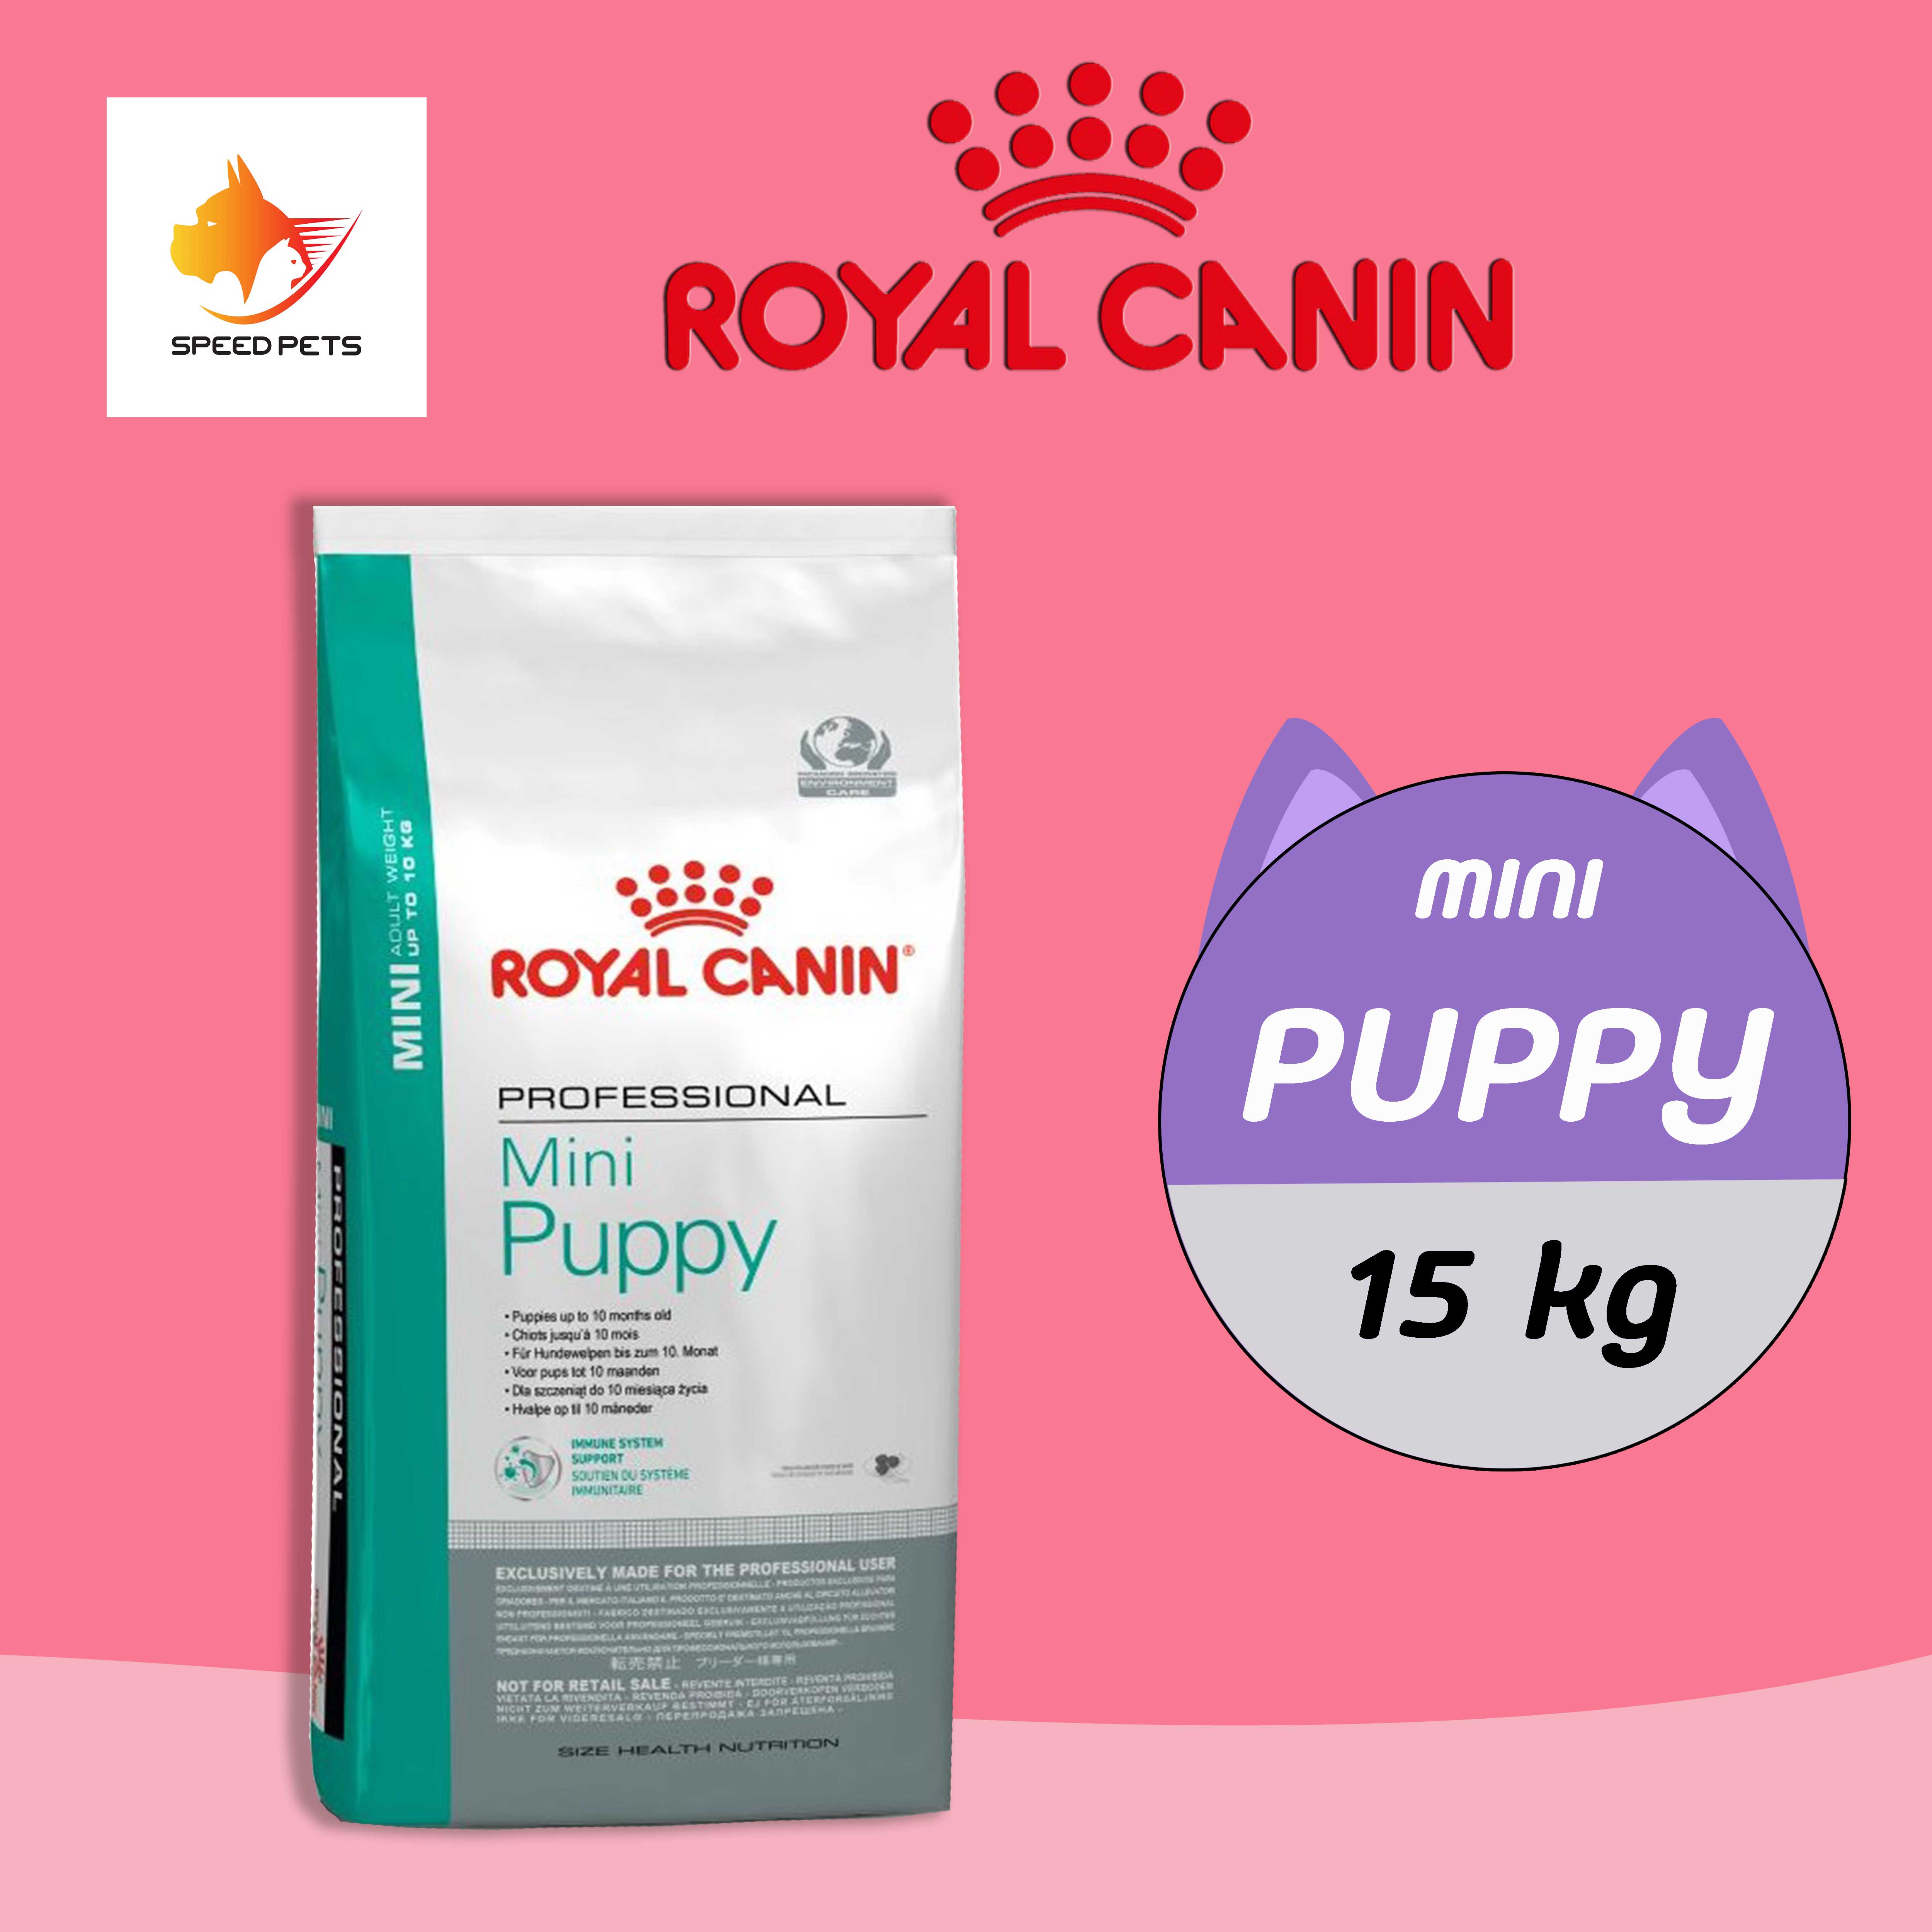 Royal Canin Mini Puppy 15kg โรยัล คานิน อาหารลูกสุนัข เม็ดเล็ก ขนาด 15 กก.